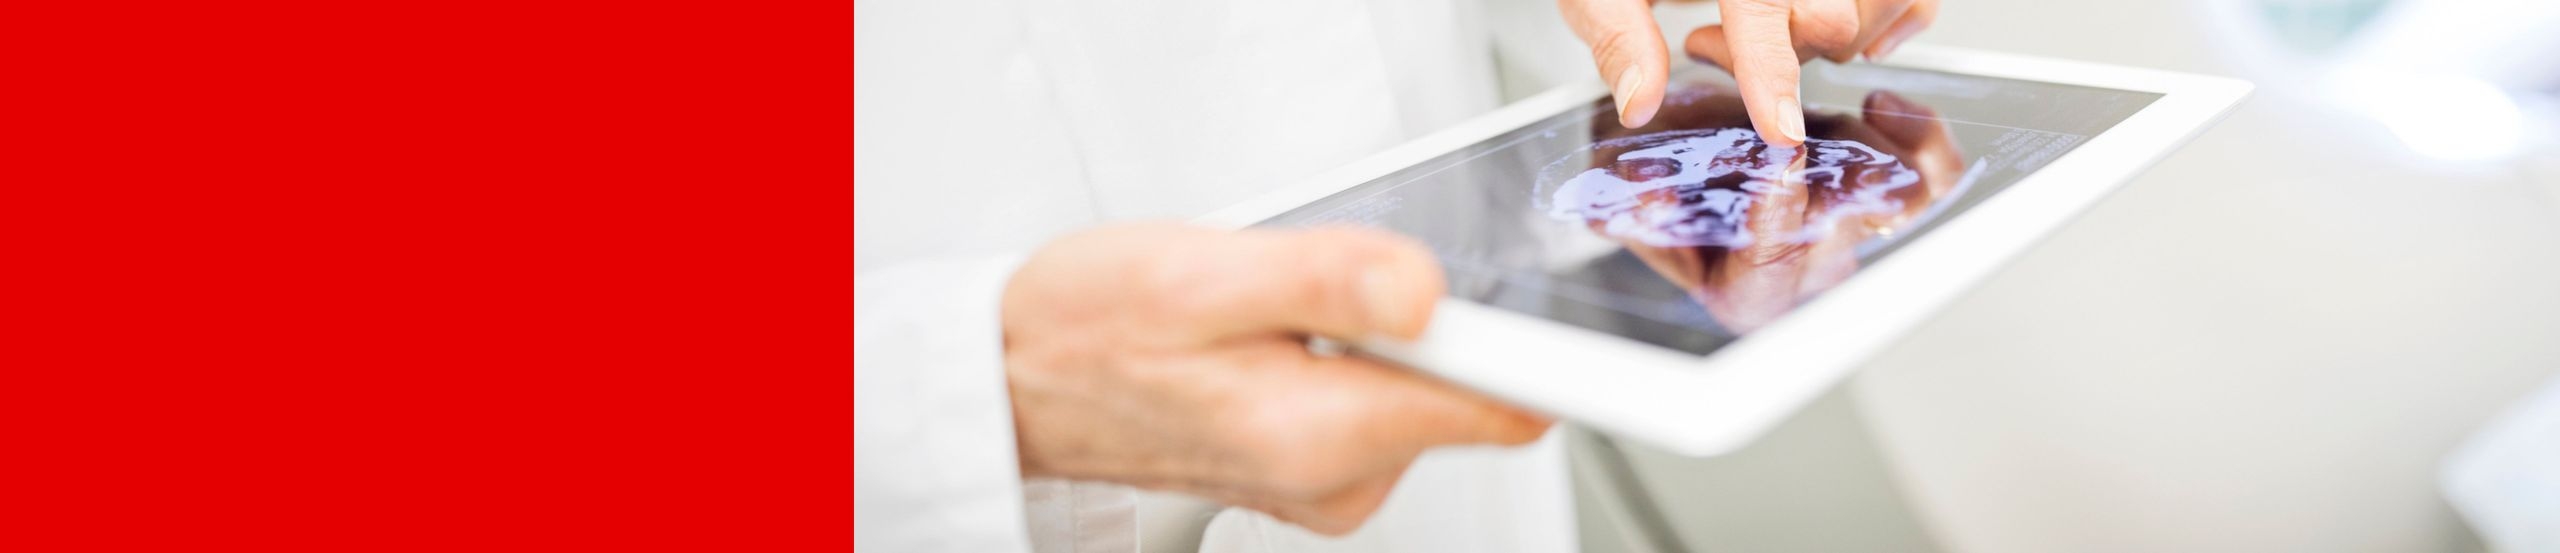 Eine Person in einem weißen Kittel zoomt mit zwei Fingern in eine Abbildung auf einem Tablet.